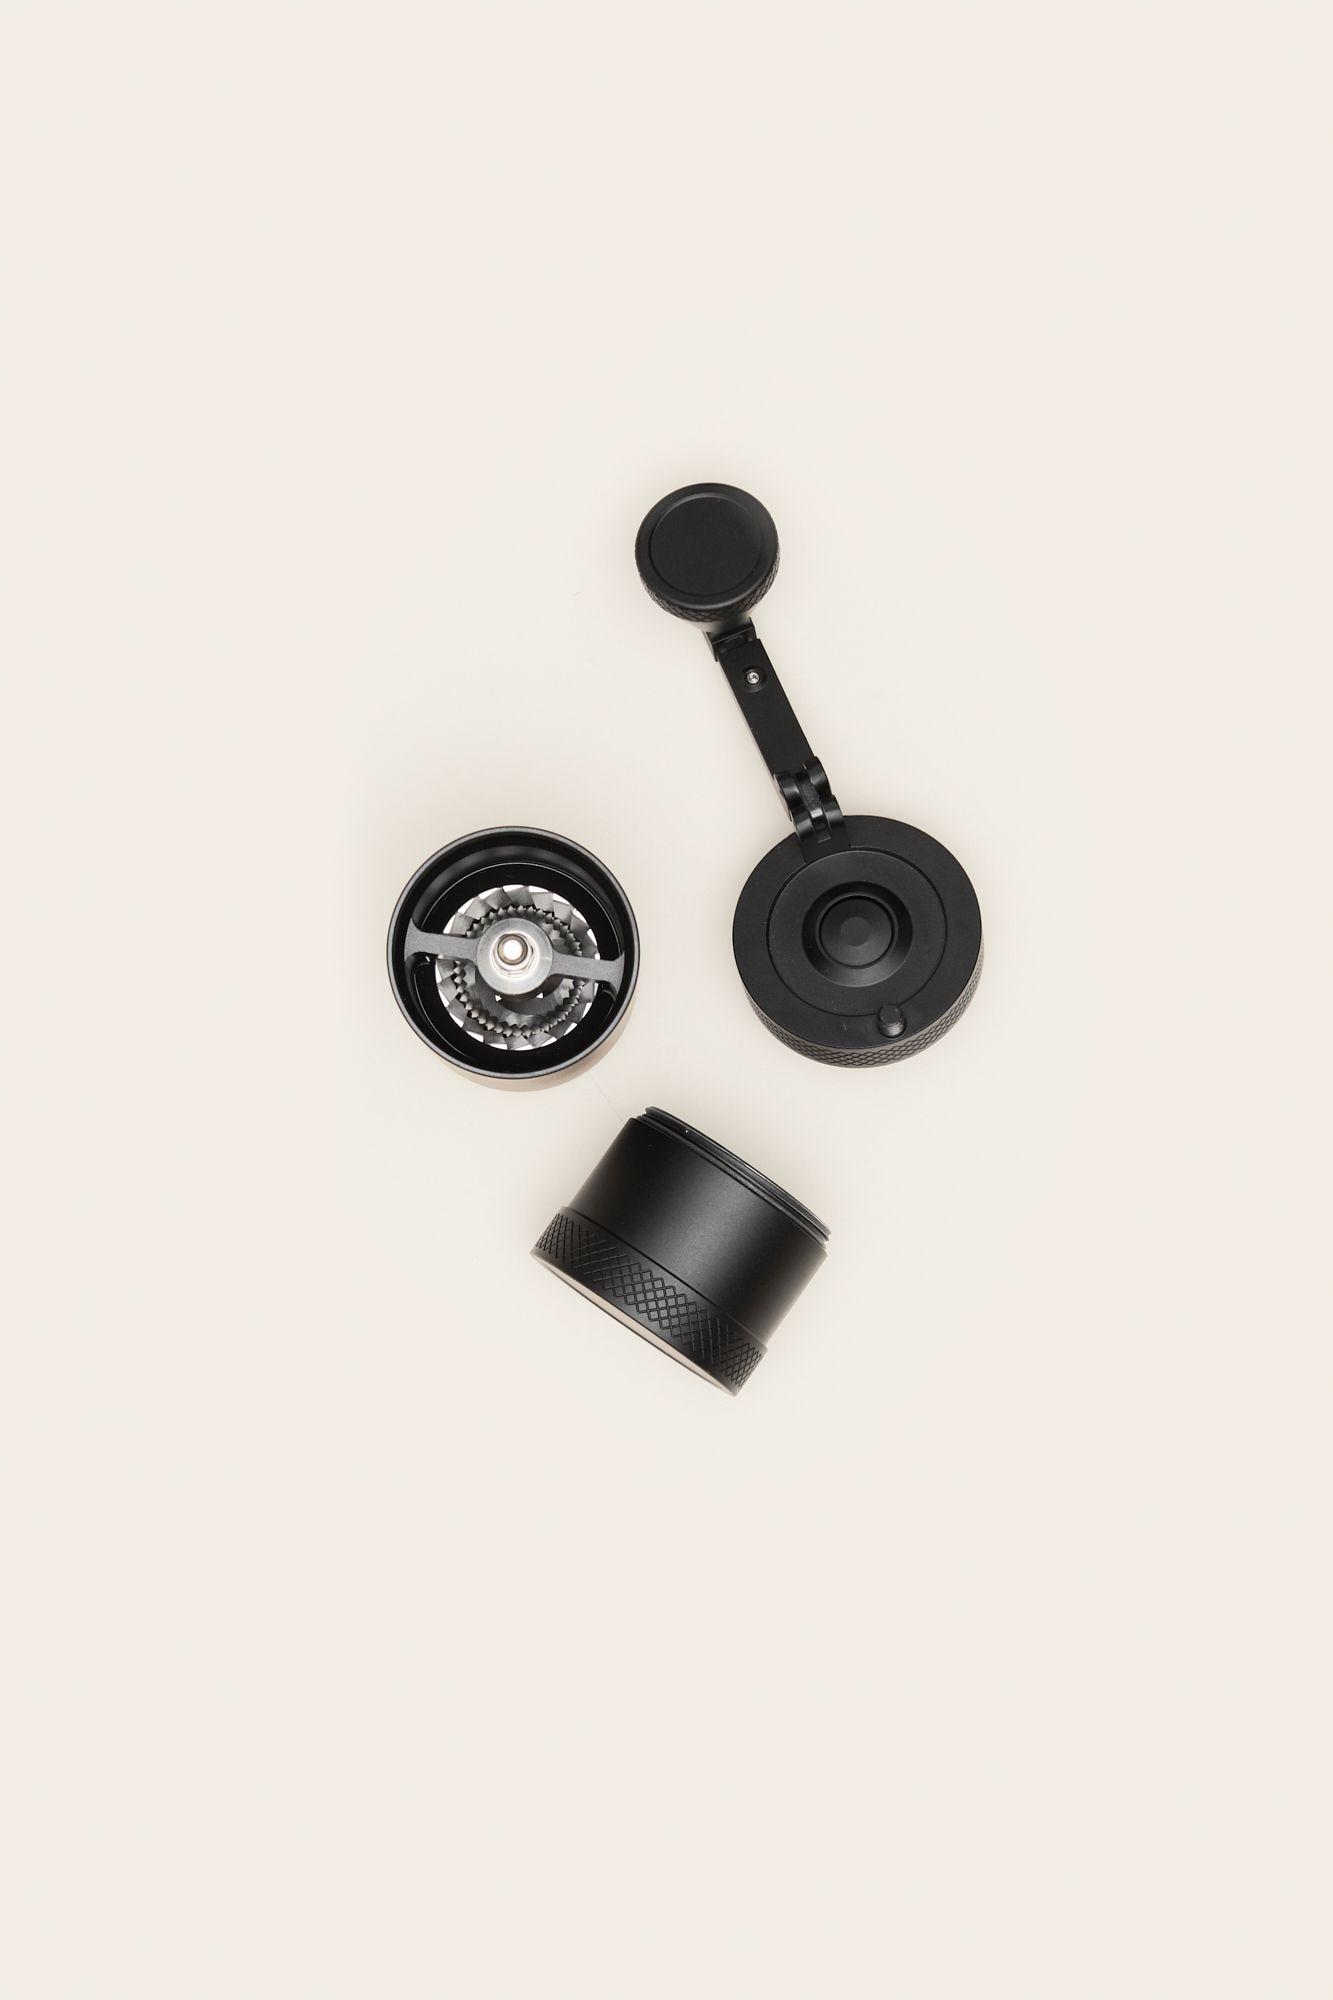 Custom coffee grinder